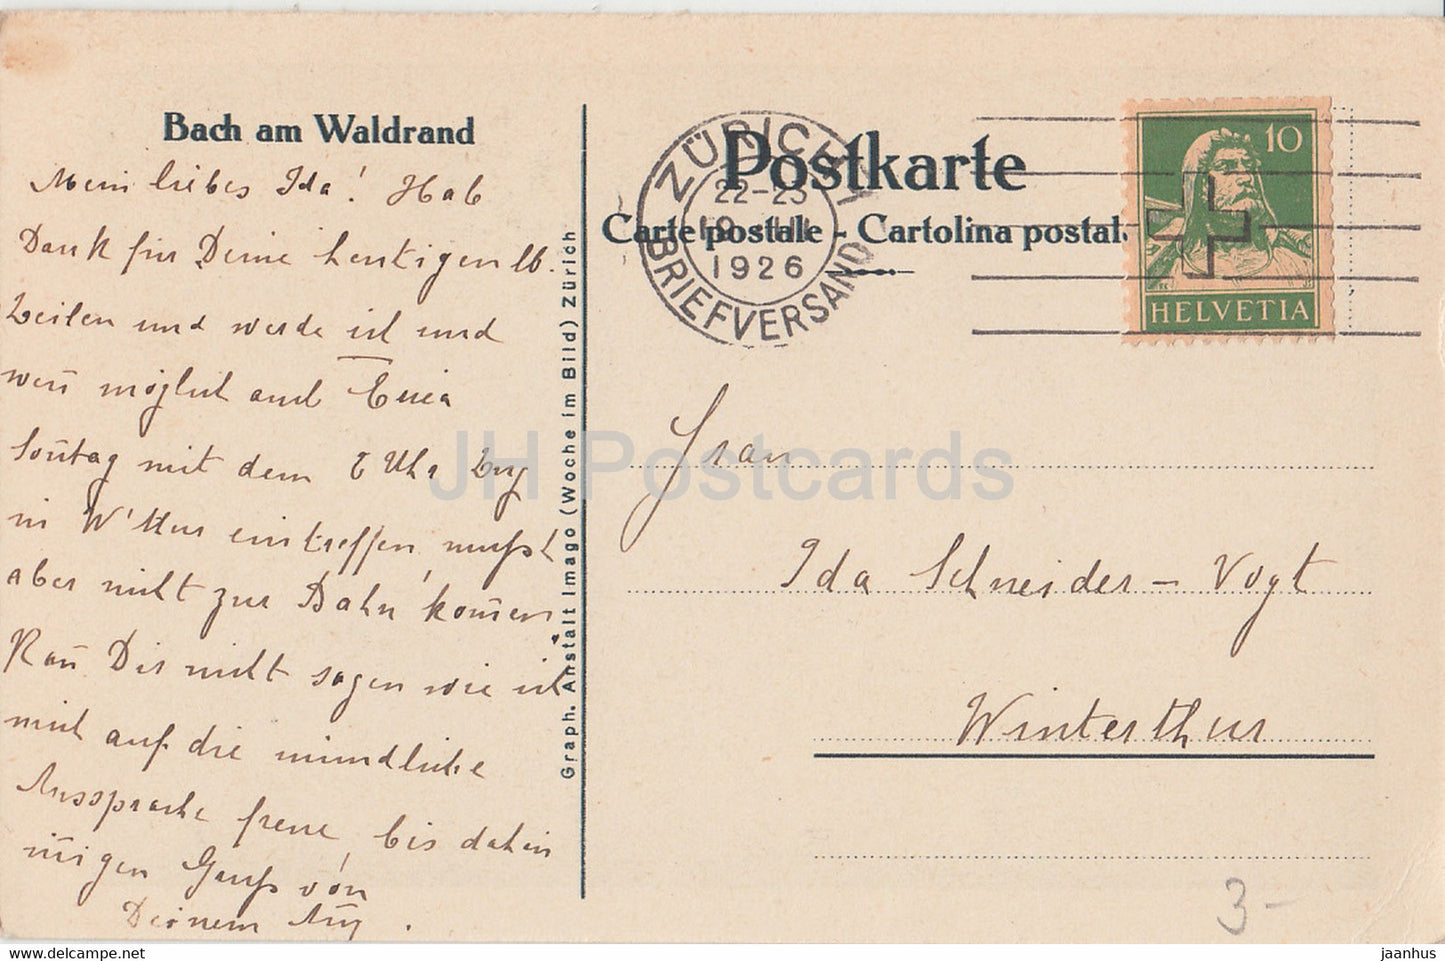 Bach am Waldrand - alte Postkarte - Schweiz - 1926 - gebraucht